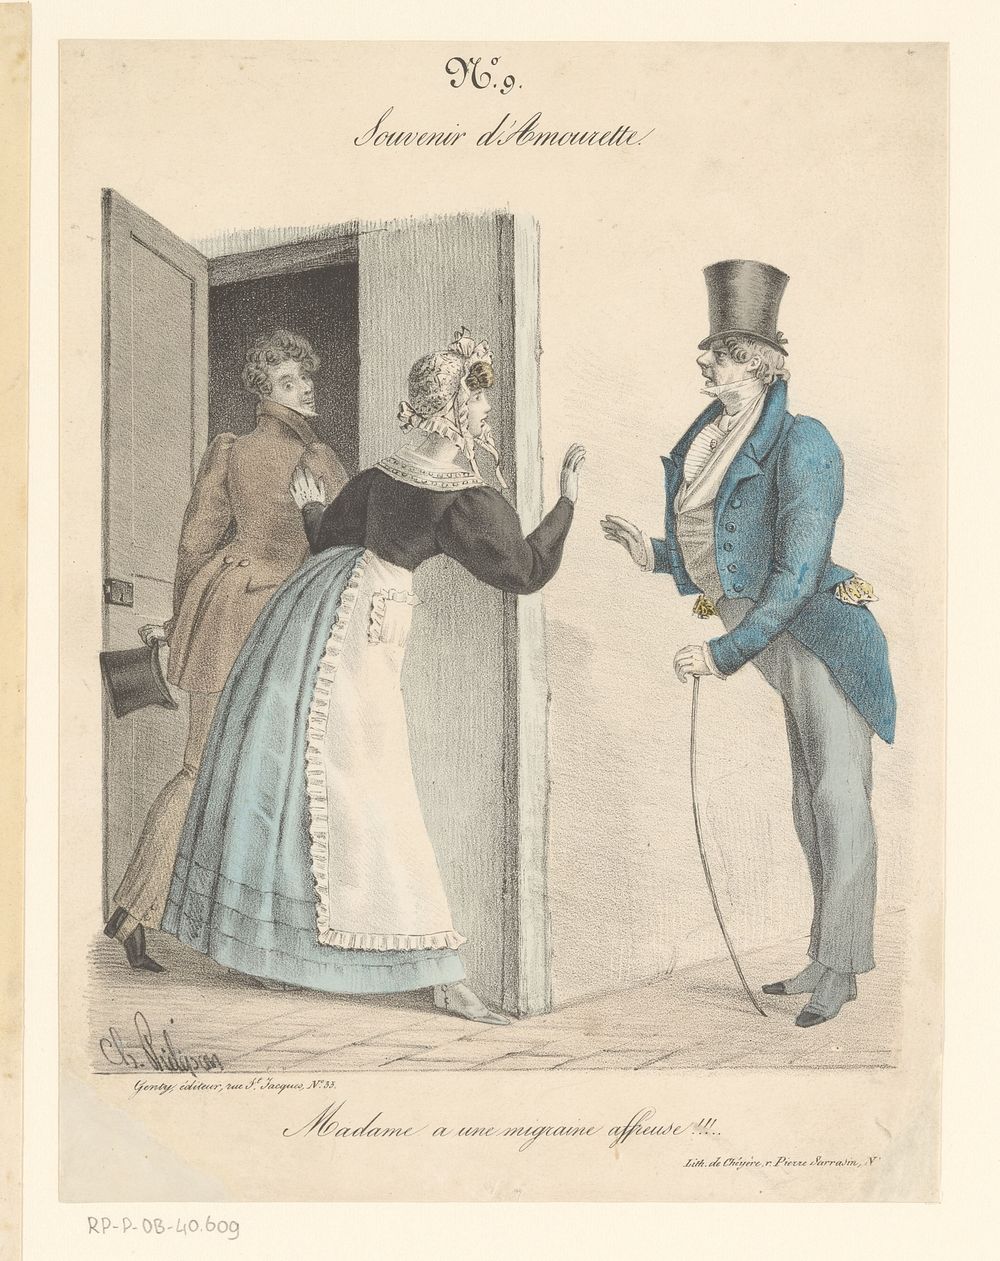 Vrouw houdt man uit het zicht voor andere man (1821 - 1828) by Charles Philipon, Alexandre Cheyère and Louis François Genty